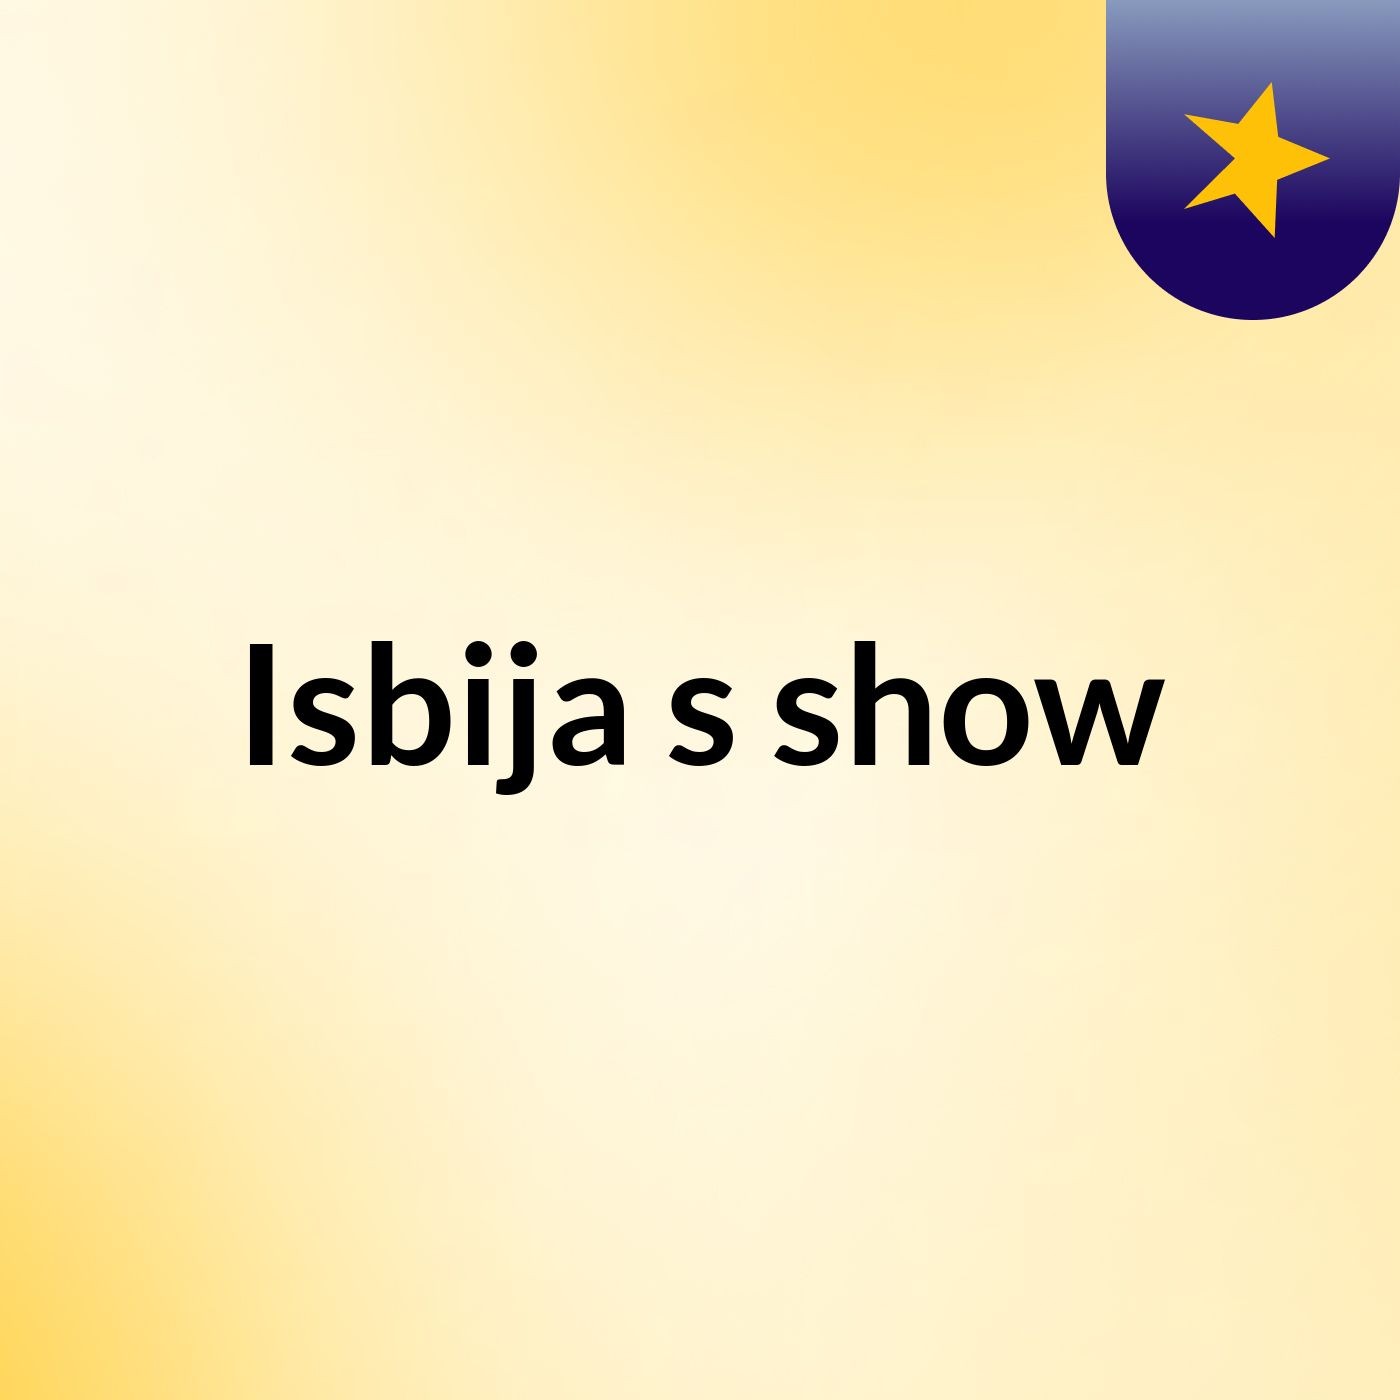 Episode 2 - Isbija's show